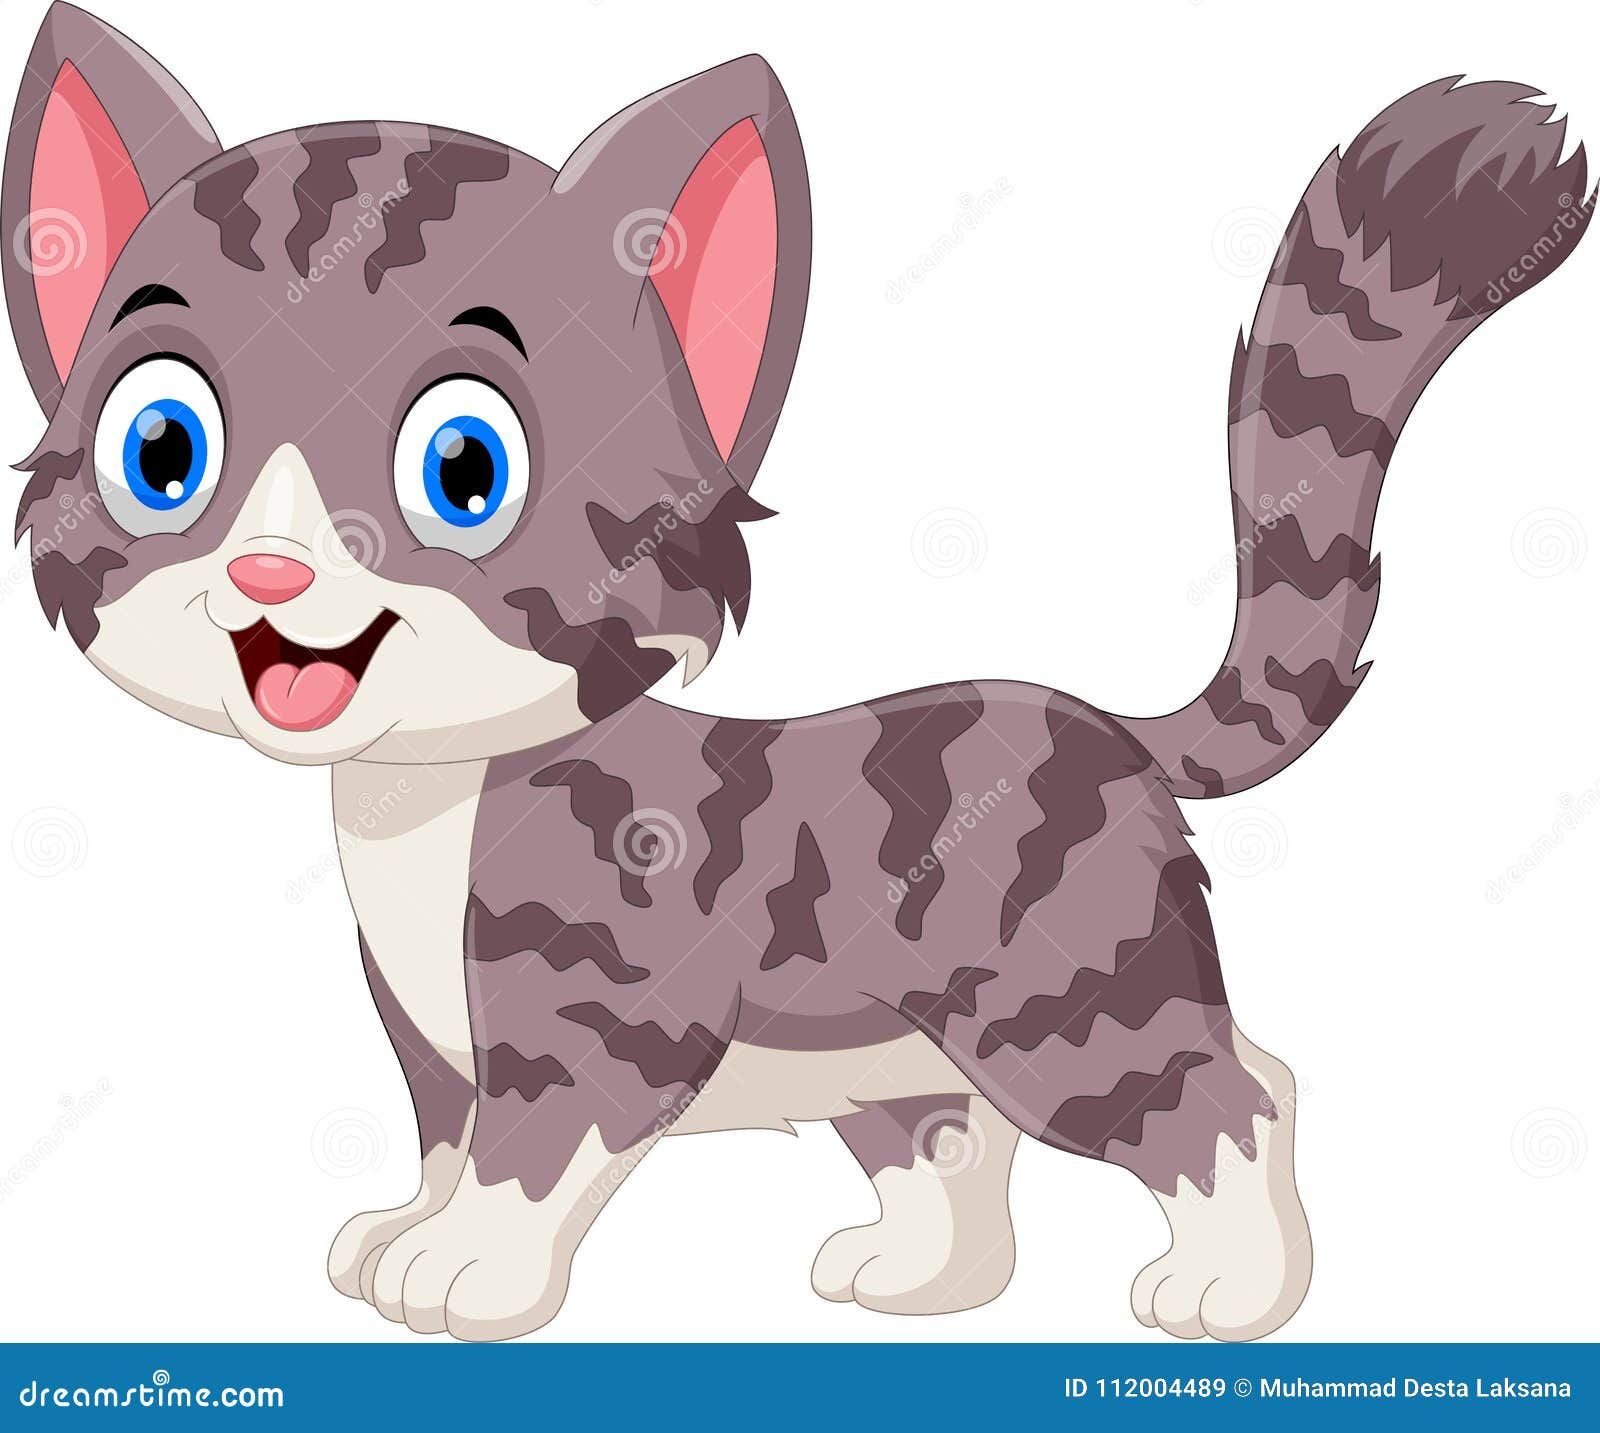 Illustration Of Cute Grey Cat Cartoon Stock Illustration ...